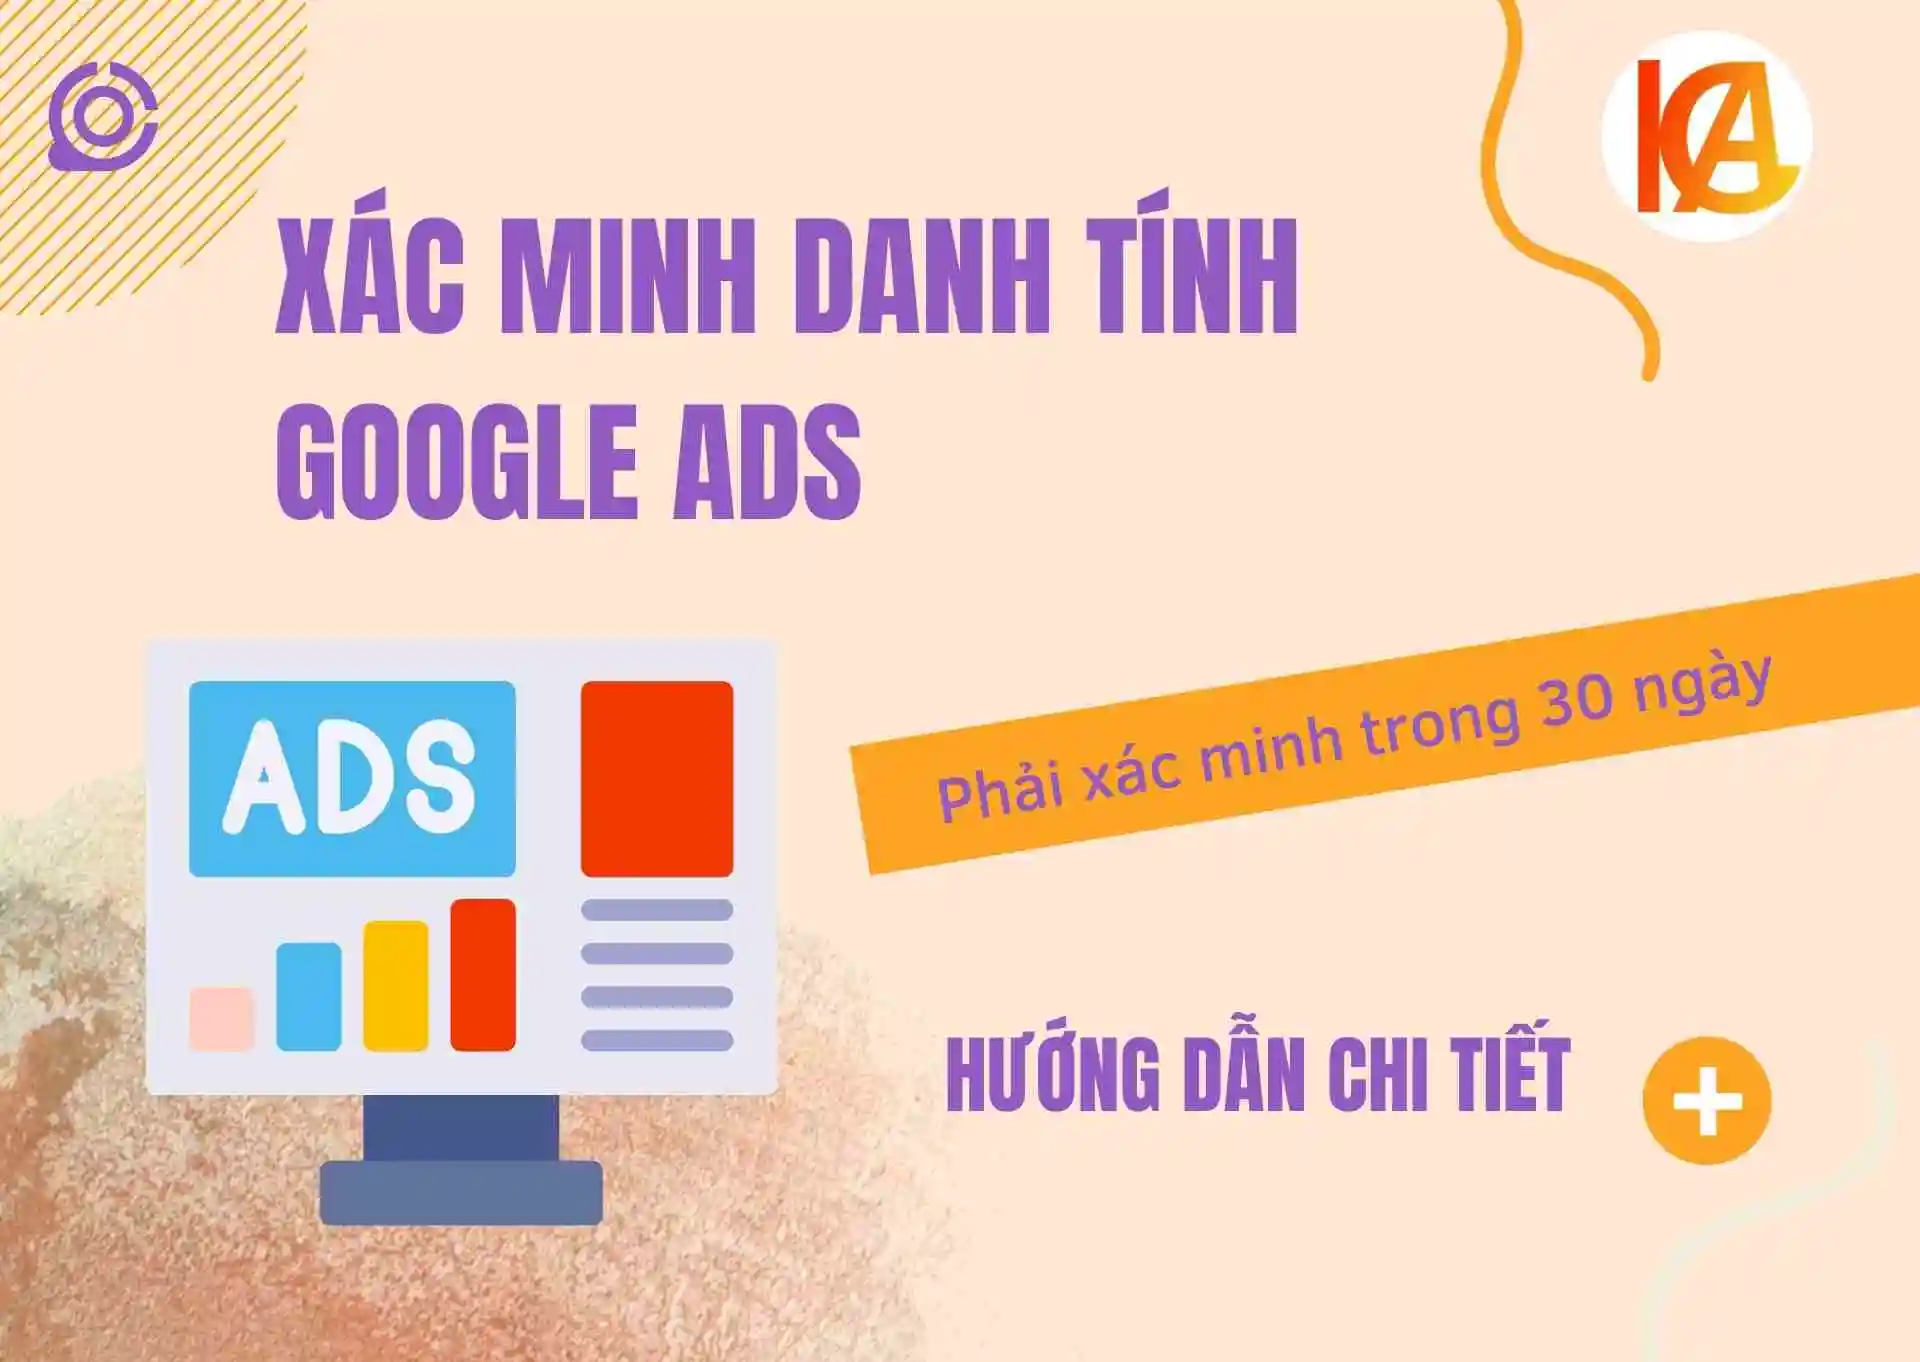 xác minh danh tính google ads